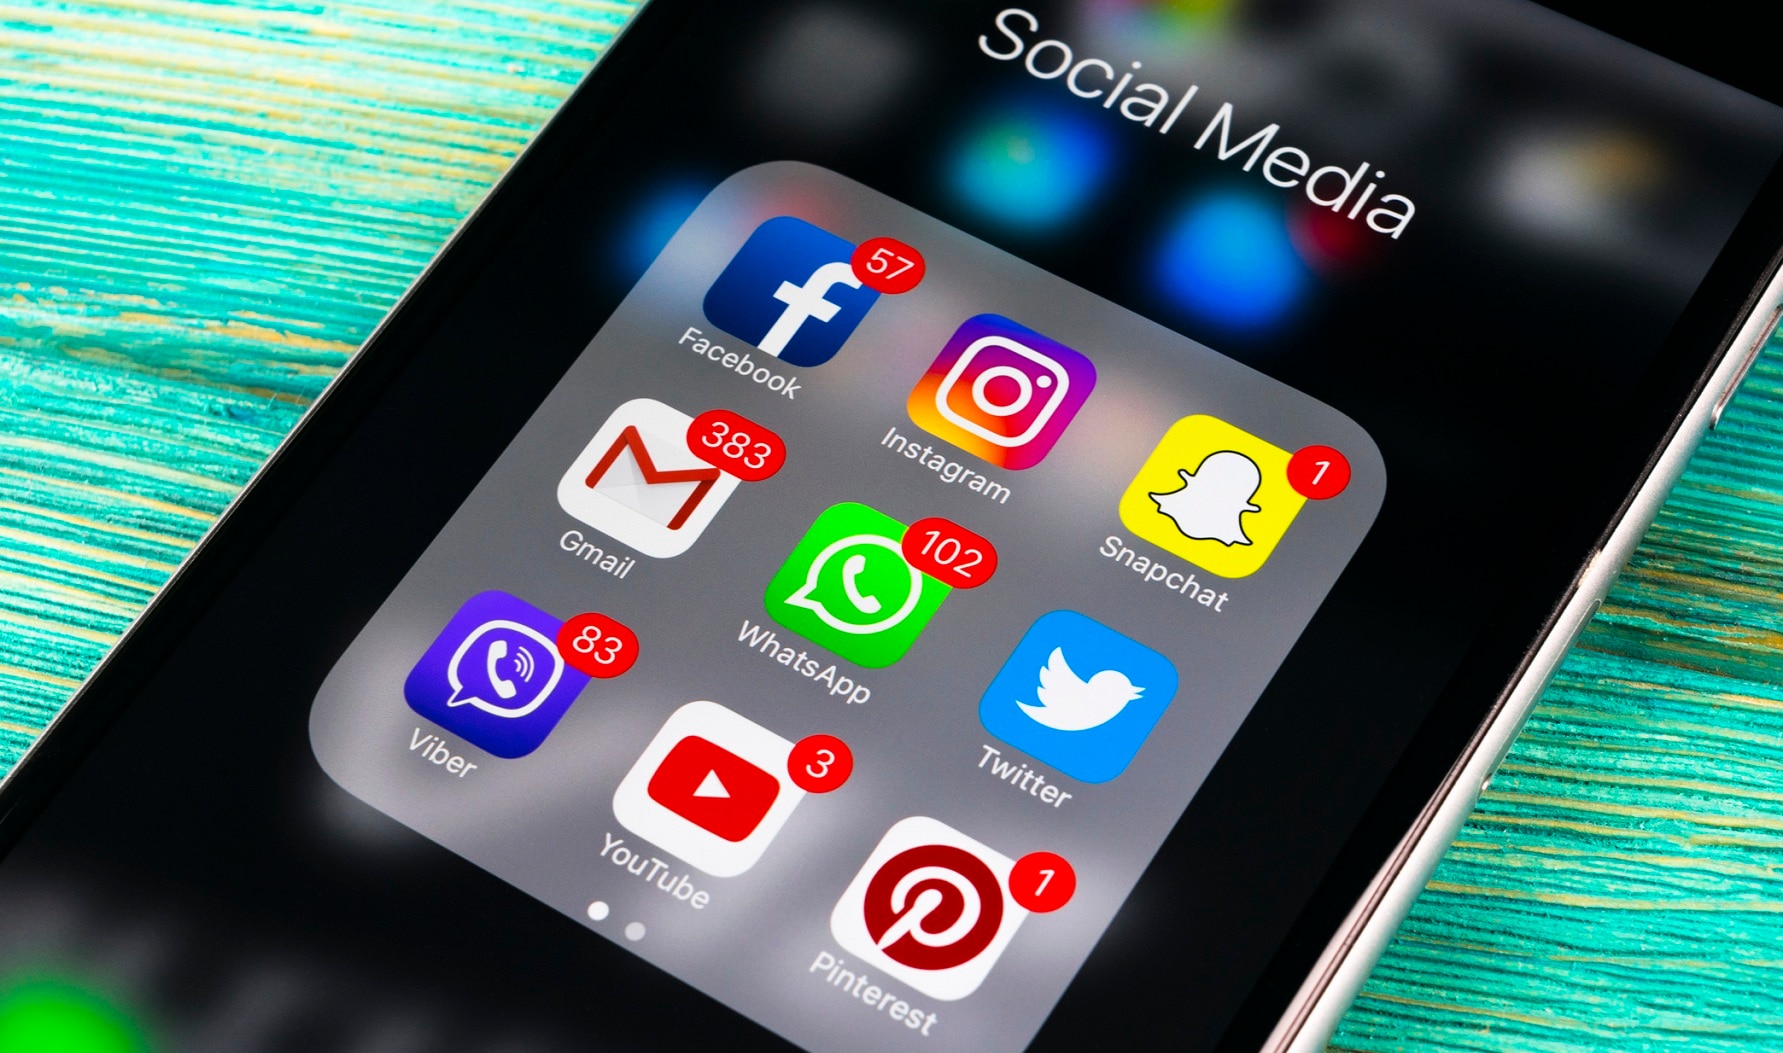 smartphone-apps-social-media-twitter-aplicaciones-redes-sociales-facebook-smartphone-bbva